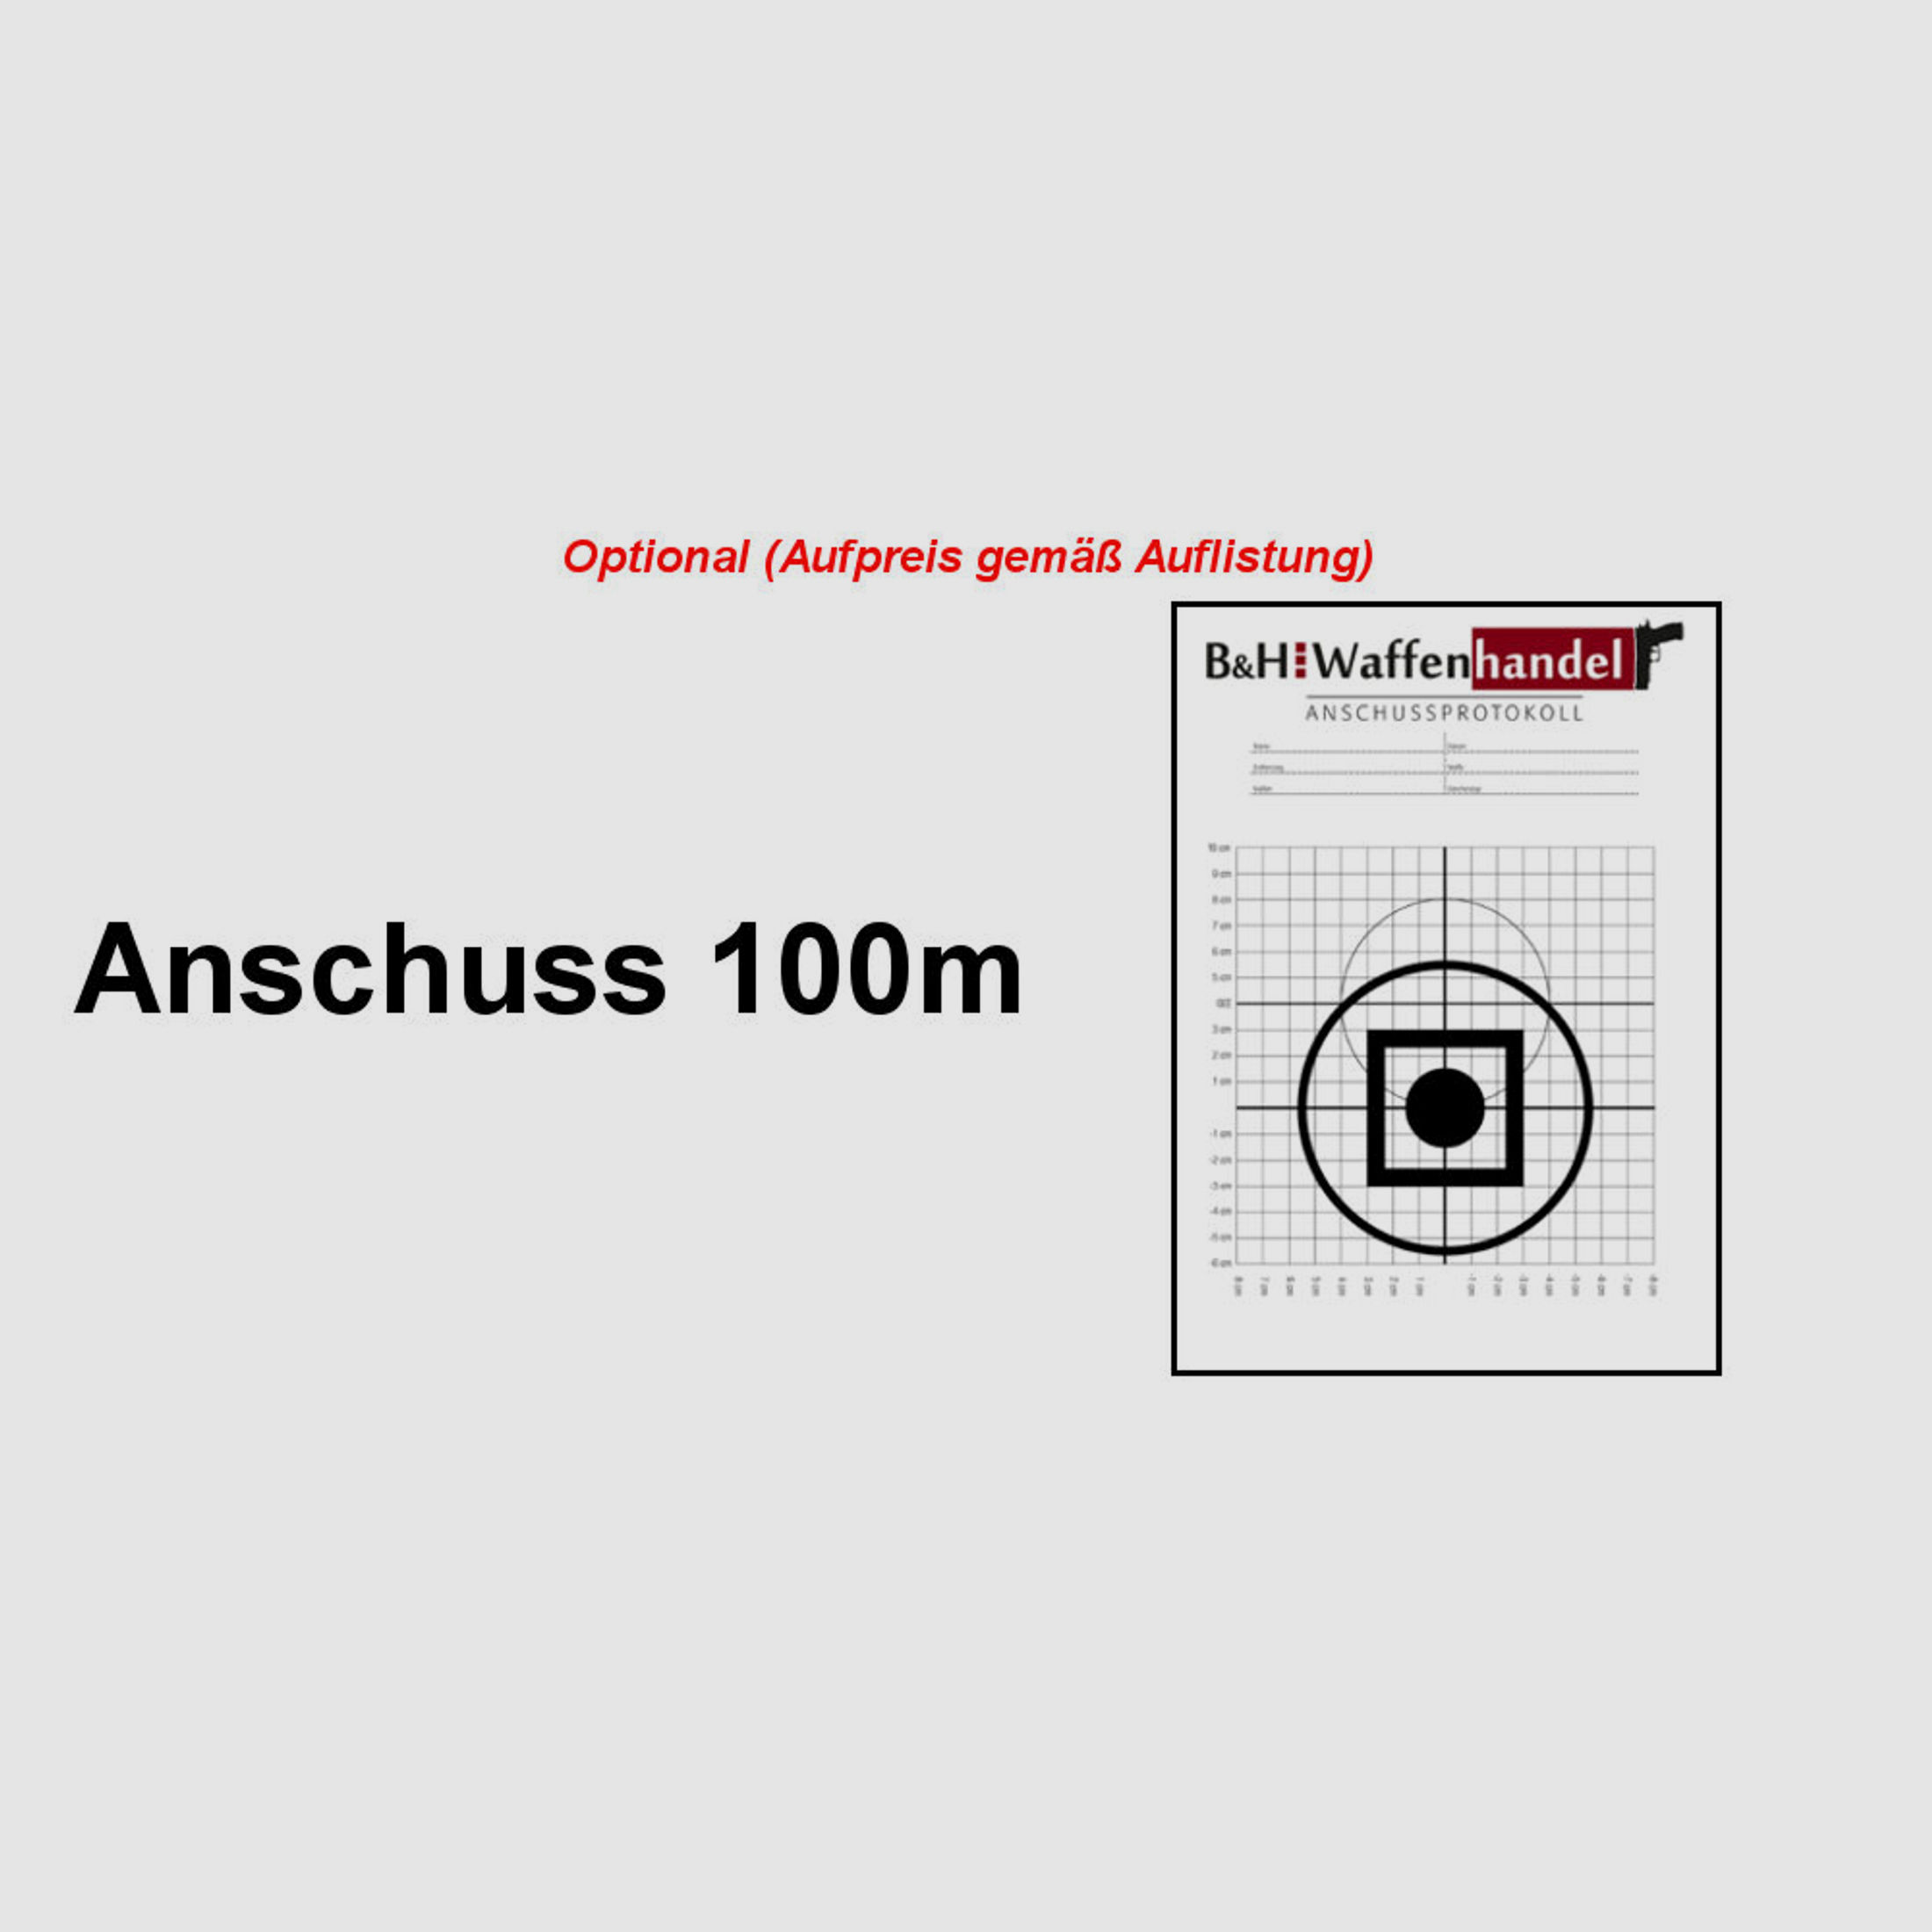 Brenner Komplettpaket:	 BR20 L.E. (Nussbaum, verstellbarer Schaftrücken / Limited Edition) mit Bushnell 2.5-15x50 (Parallaxe verst.)